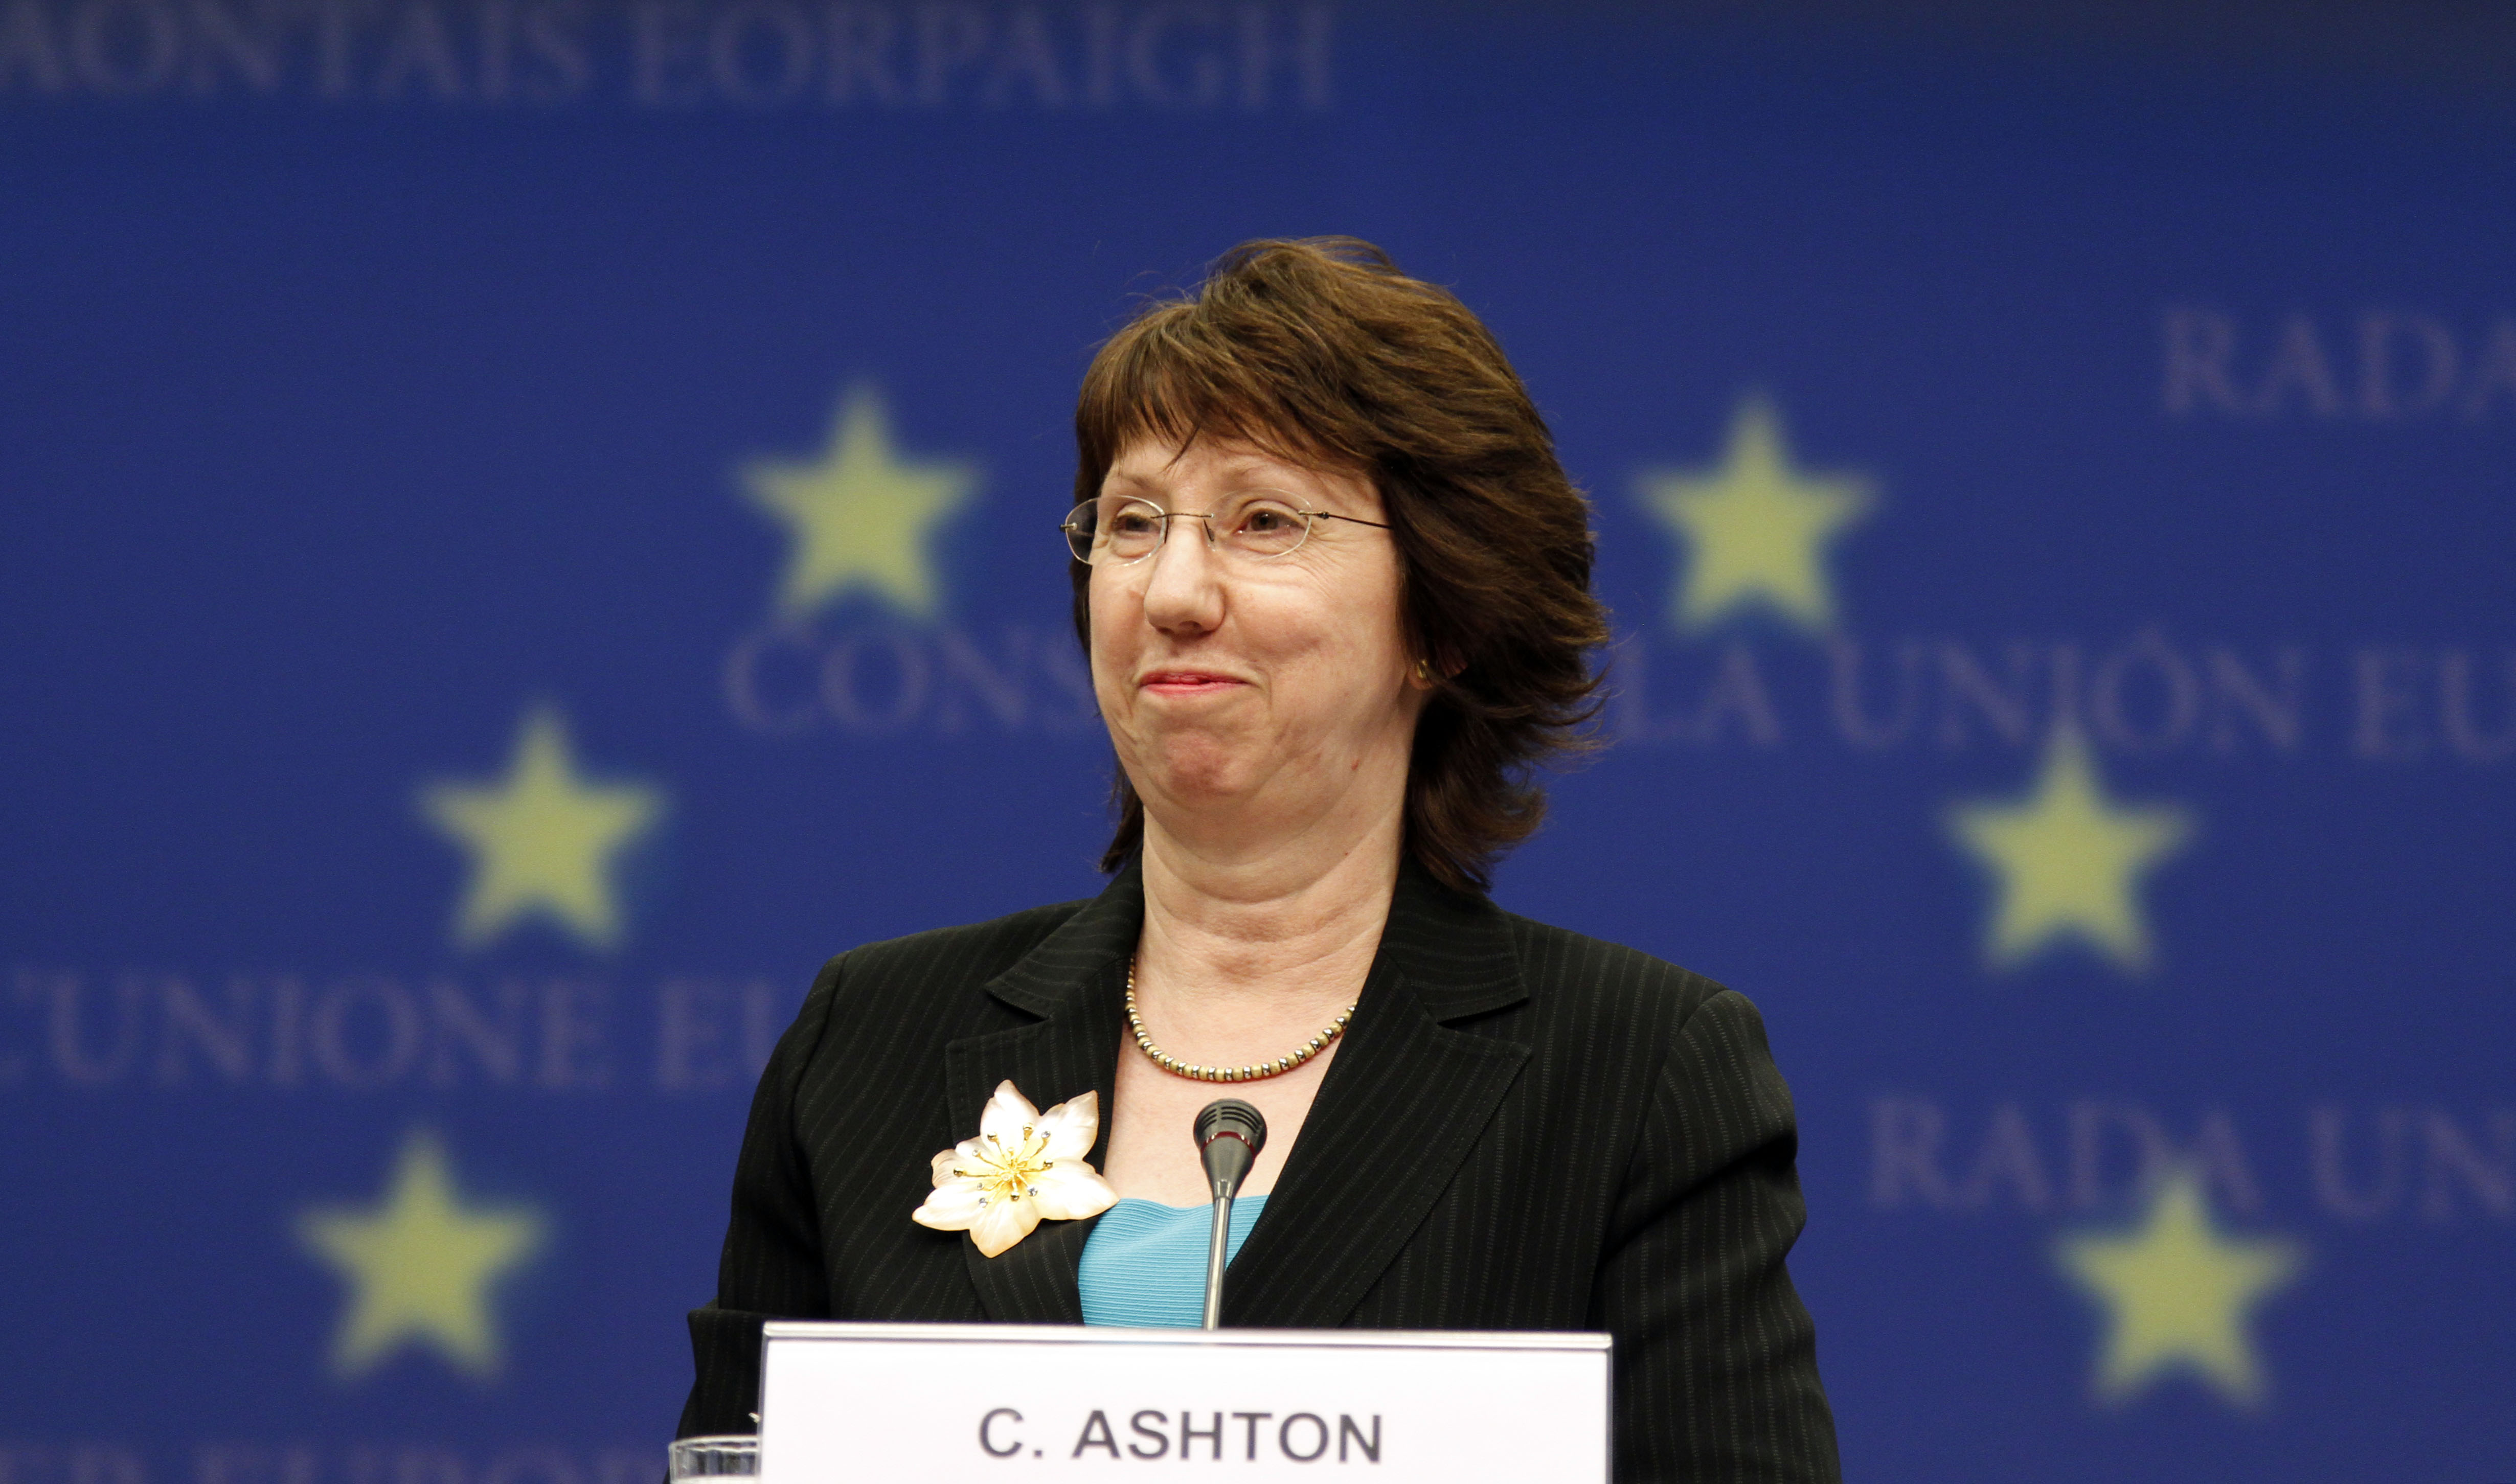 EU:s utrikesminister Catherine Ashton kräver att Hosni Mubarak börjar prata med oppositionen, men...